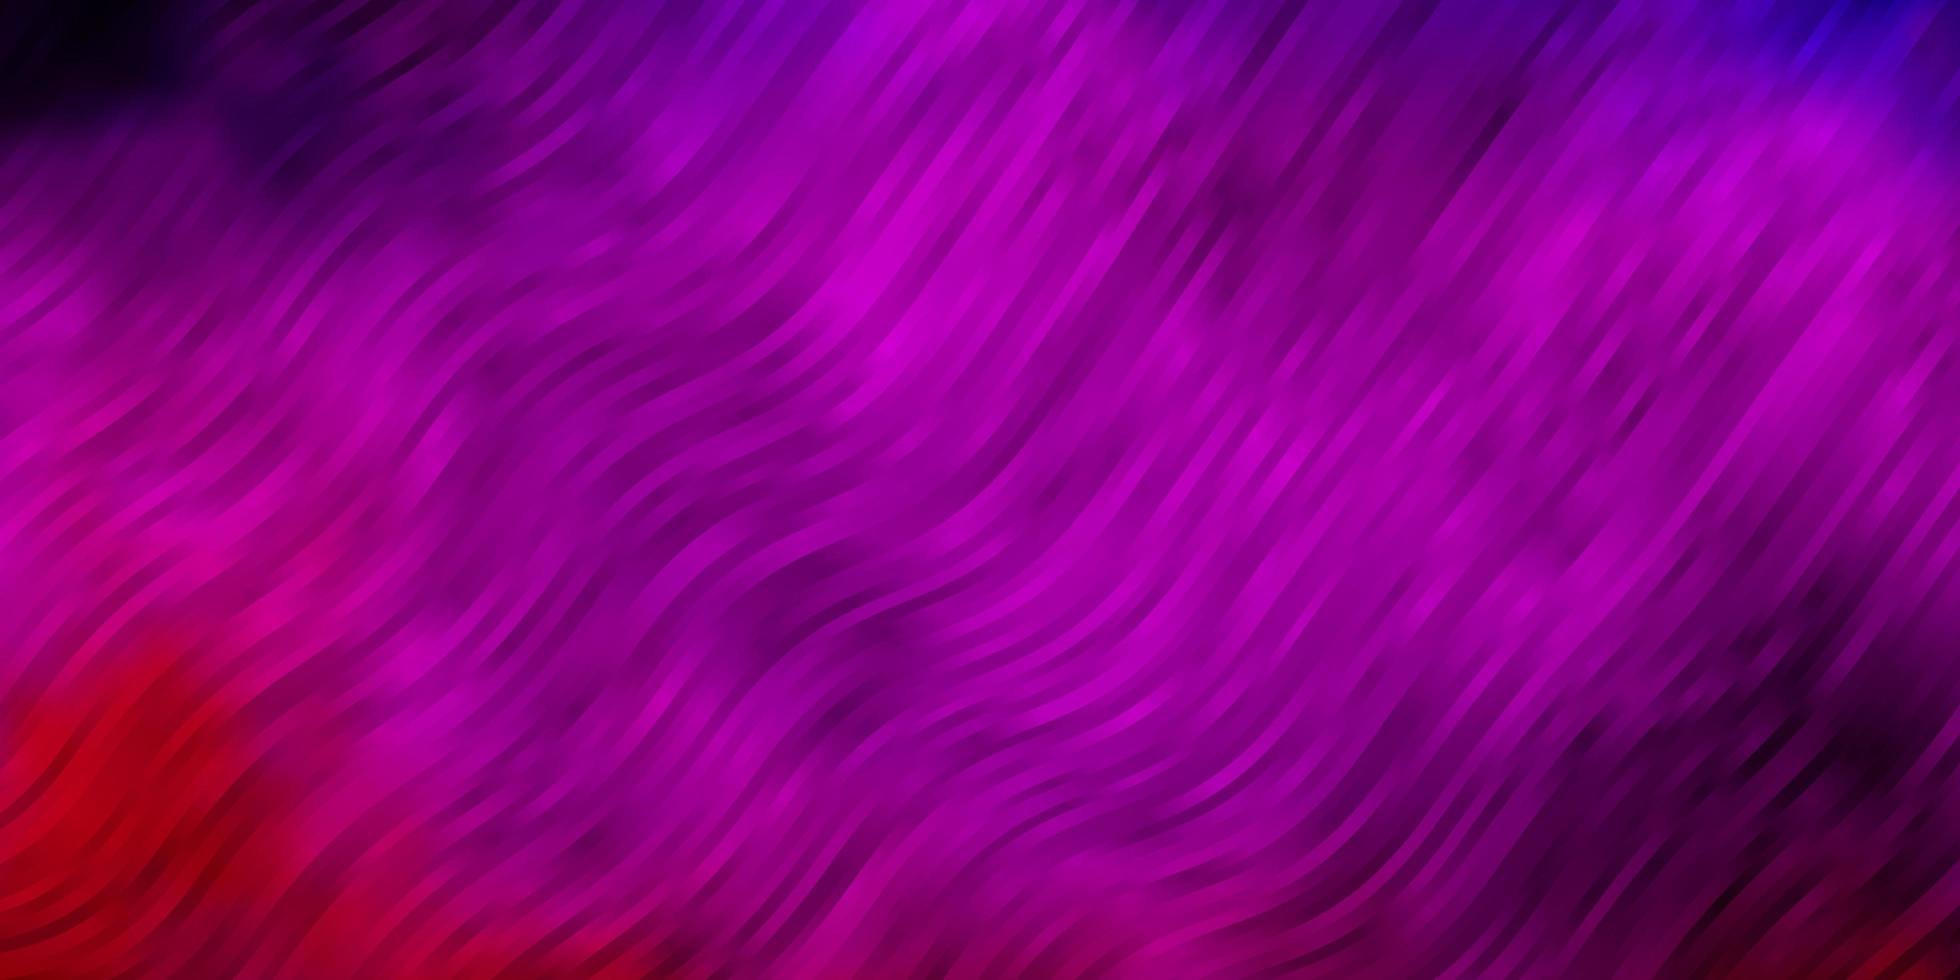 lichtpaars, roze vectorpatroon met gebogen lijnen. kleurrijk geometrisch monster met verloopcurven. slim ontwerp voor uw promoties. vector